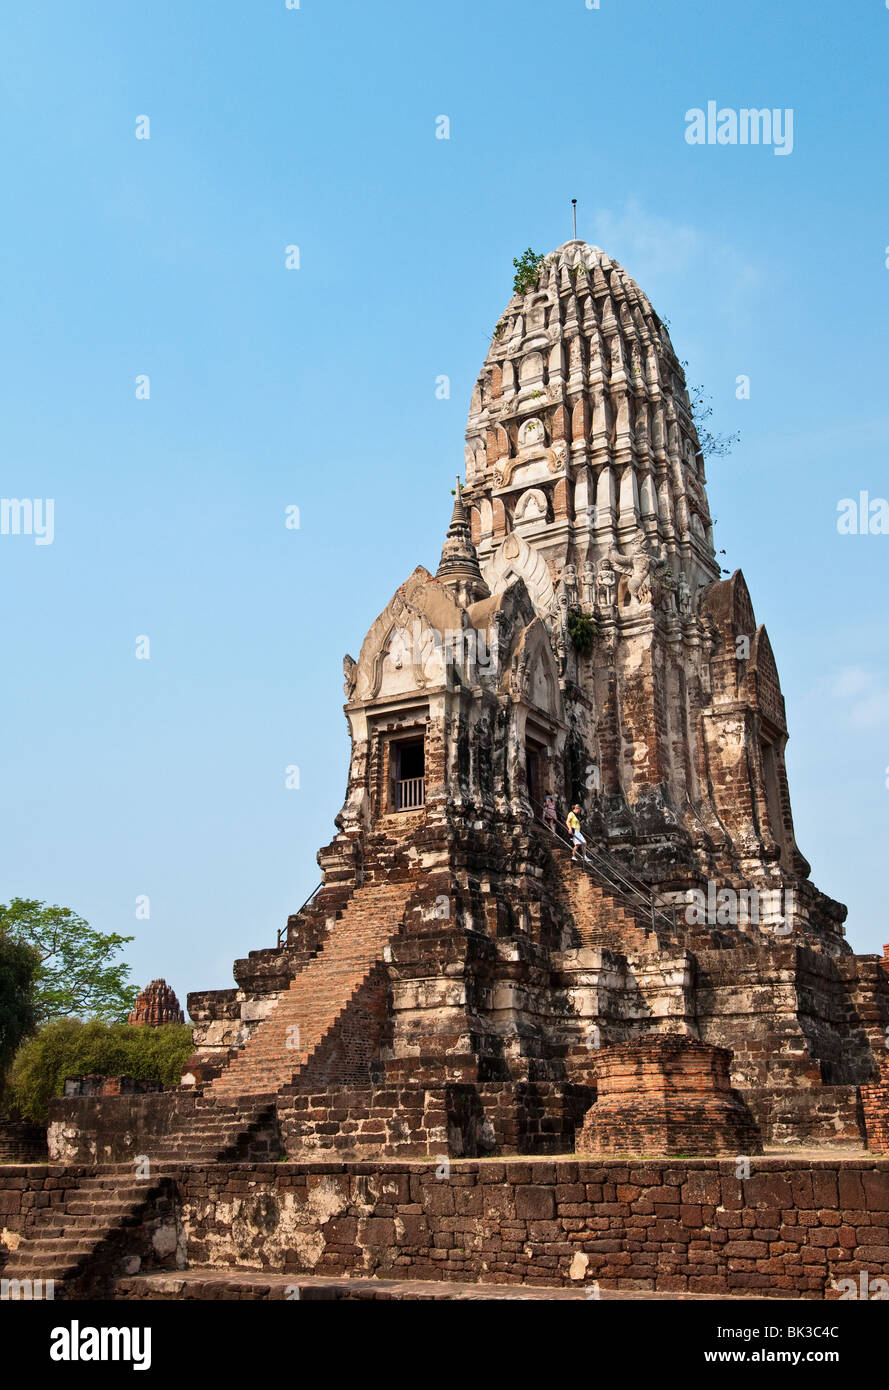 Le prang principal temple bouddhiste de Wat Ratchaburana ruines d'Ayutthaya, Thaïlande, Site du patrimoine mondial de l'UNESCO. Banque D'Images